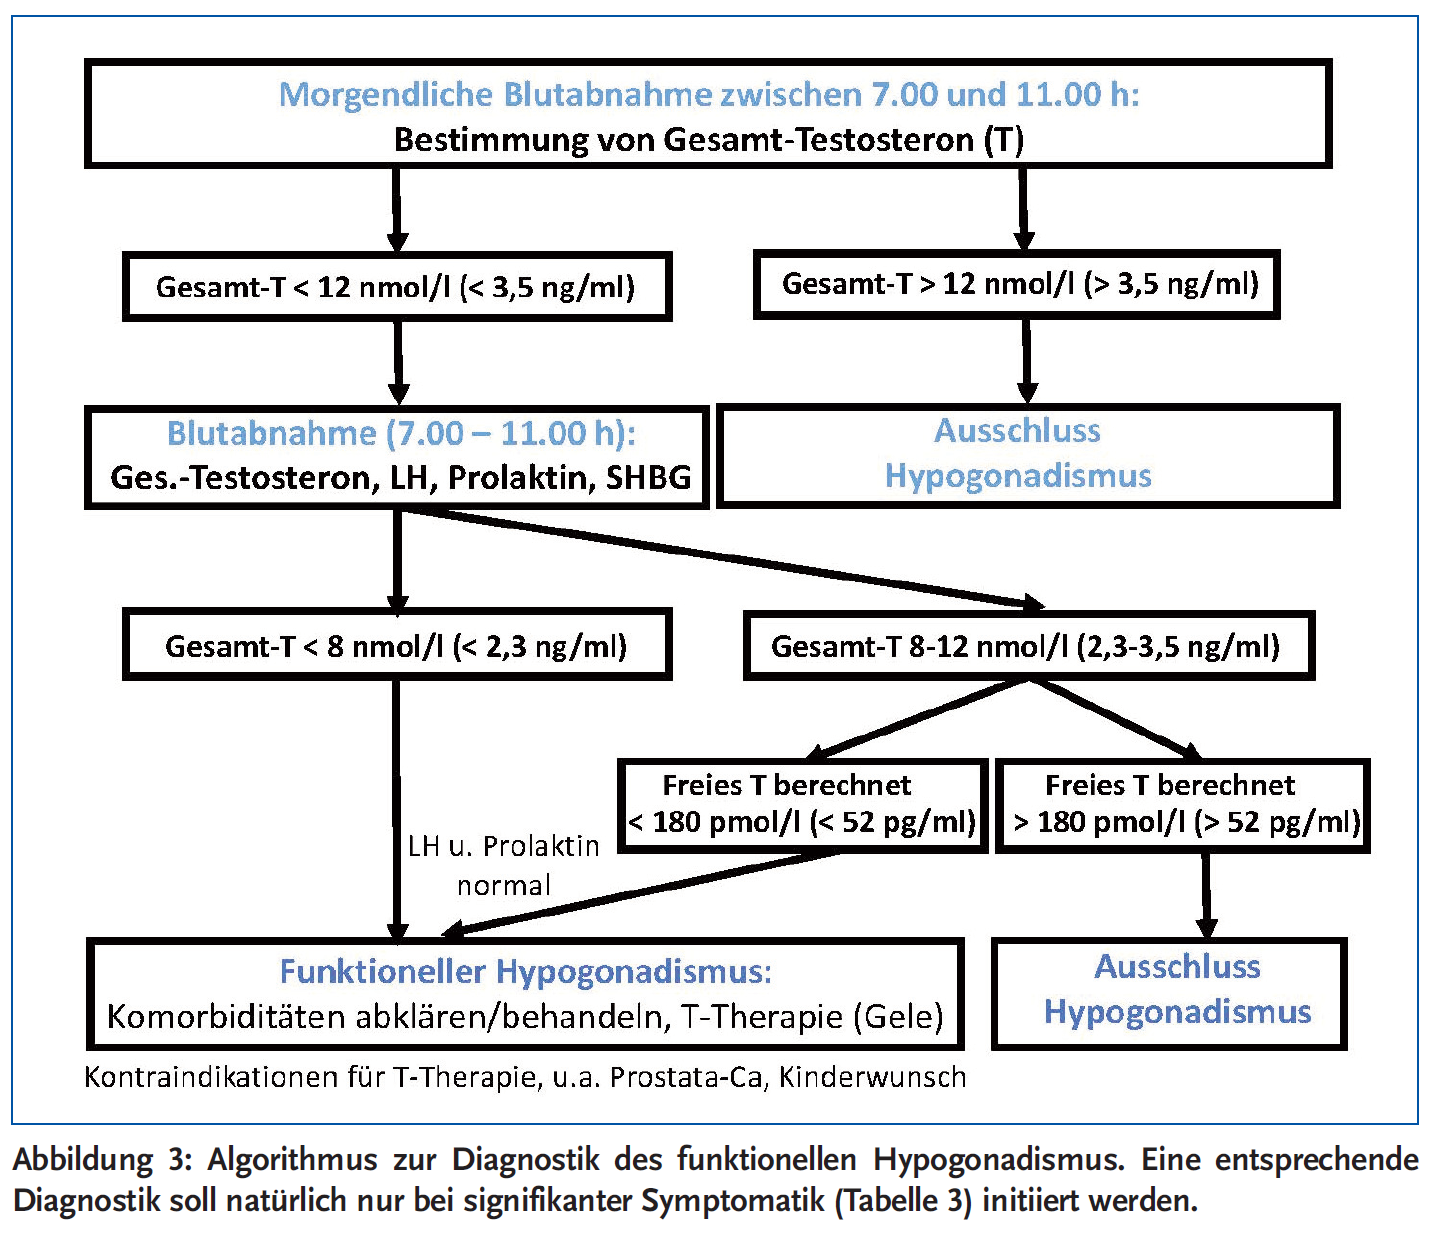 Abbildung 3: Algorithmus zur Diagnostik des funktionellen Hypogonadismus. Eine entsprechende Diagnostik soll natürlich nur bei signifikanter Symptomatik (Tabelle 3) initiiert werden.